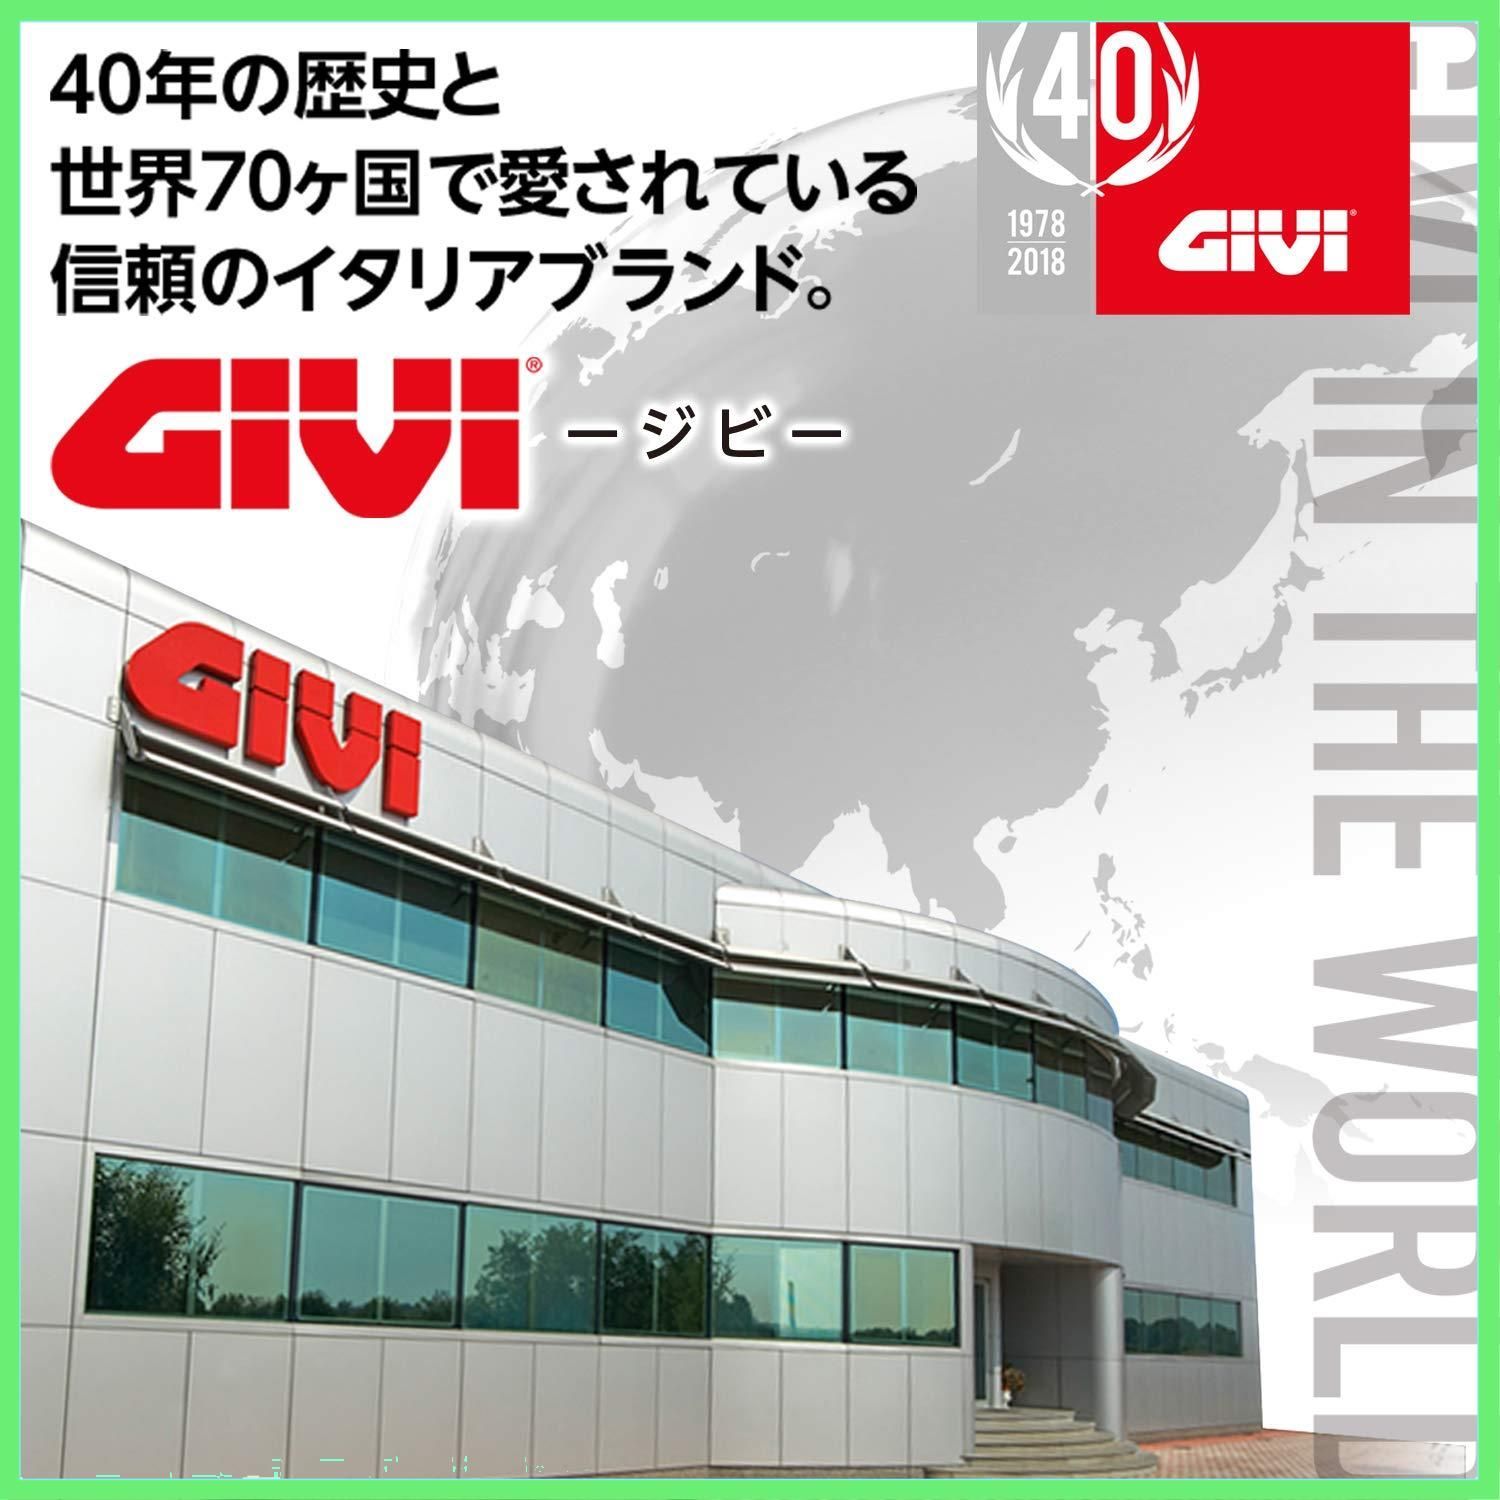 ◇GIVI(ジビ) UT806 防水シートバッグ 96680 SODA Shop メルカリ